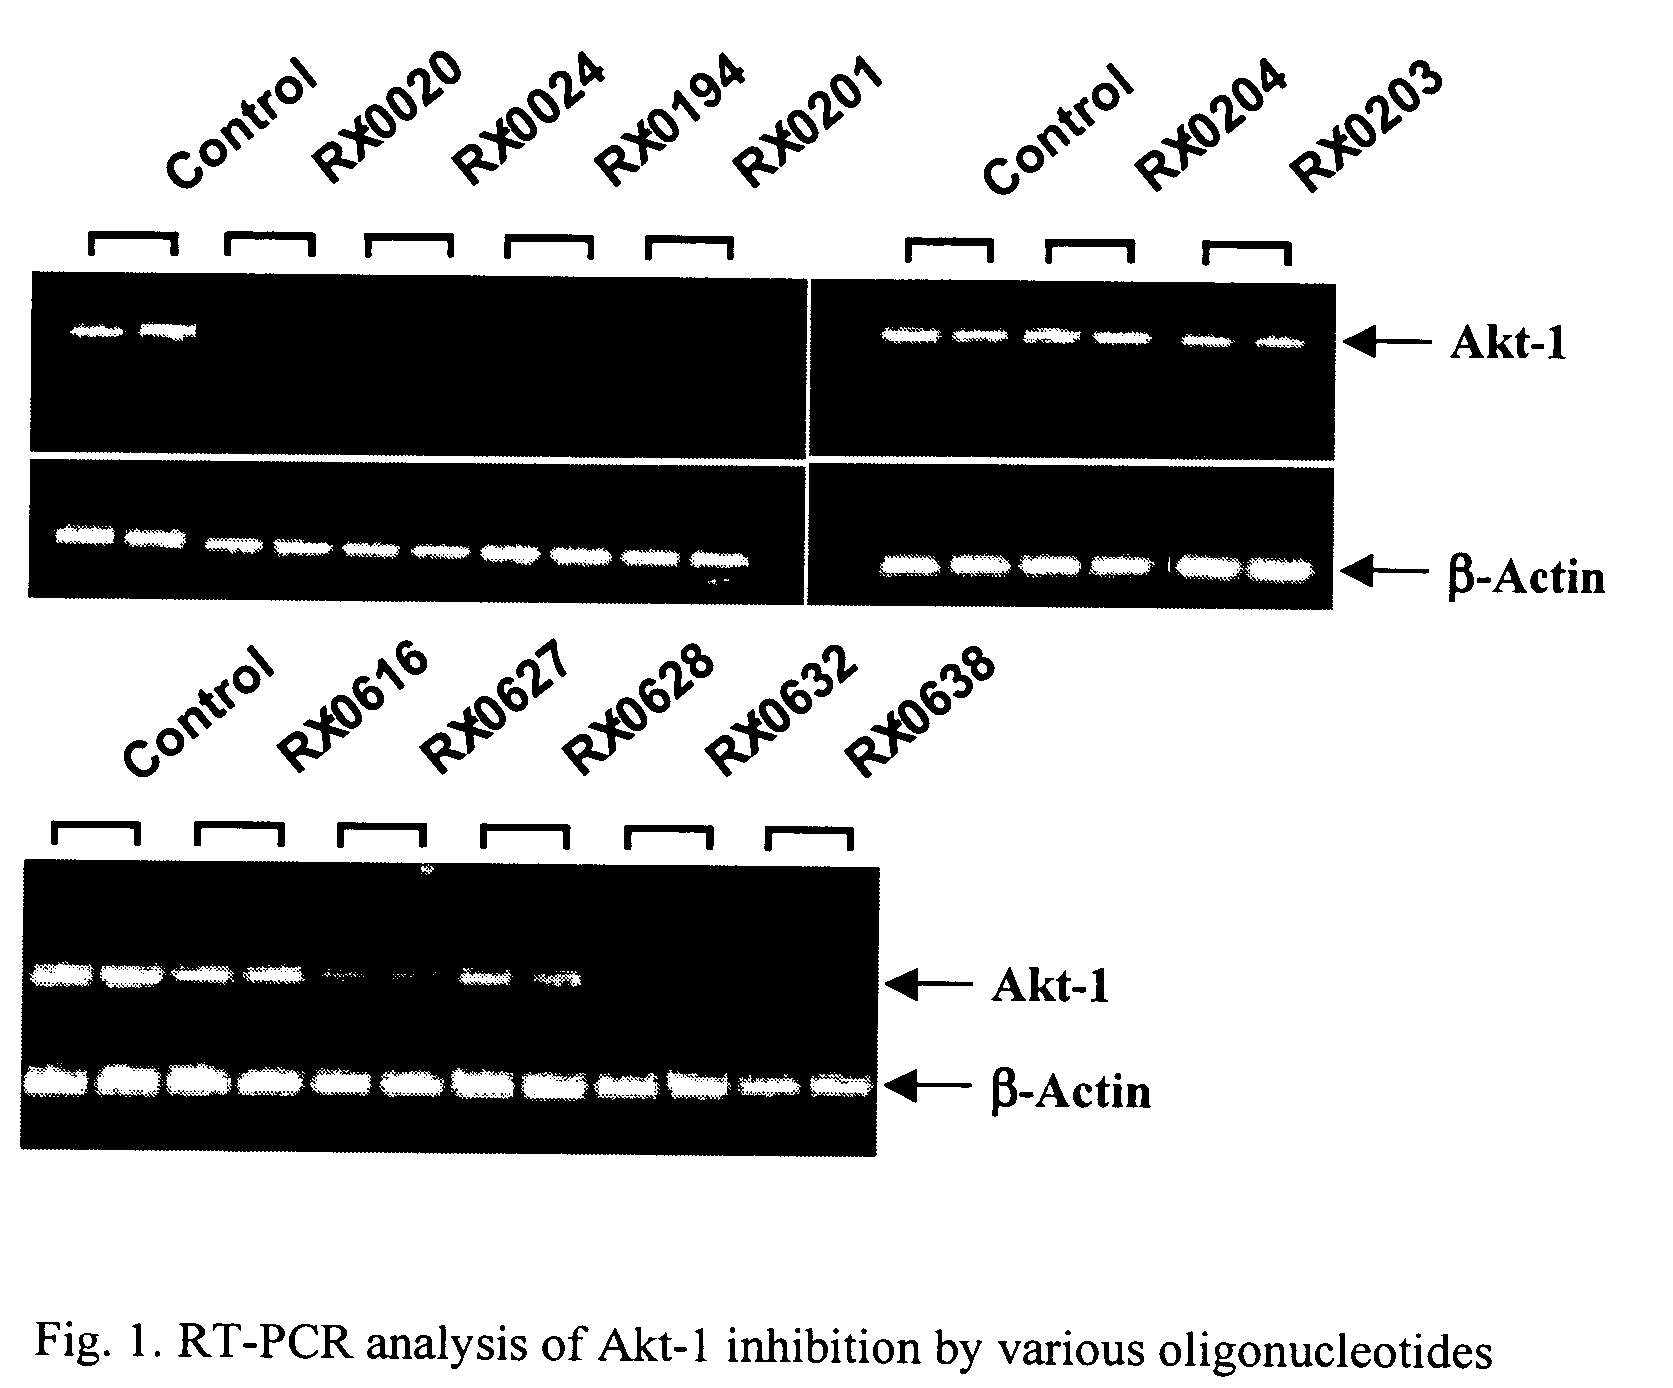 Use of antisense oligonucleotides to inhibit the expression of human Akt-1